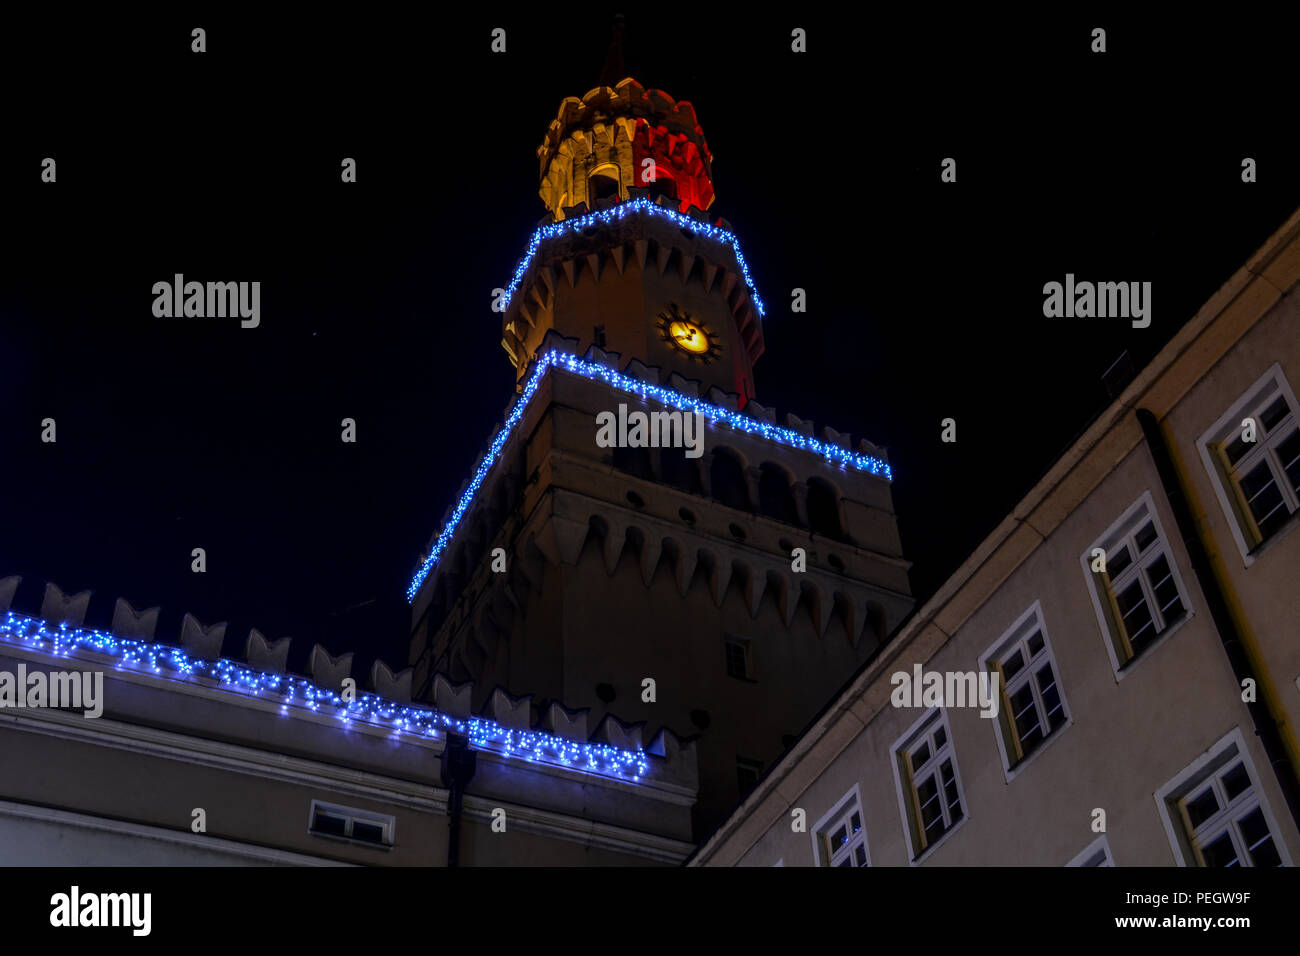 La città di notte Opole Polonia centrale area quadrata Foto Stock